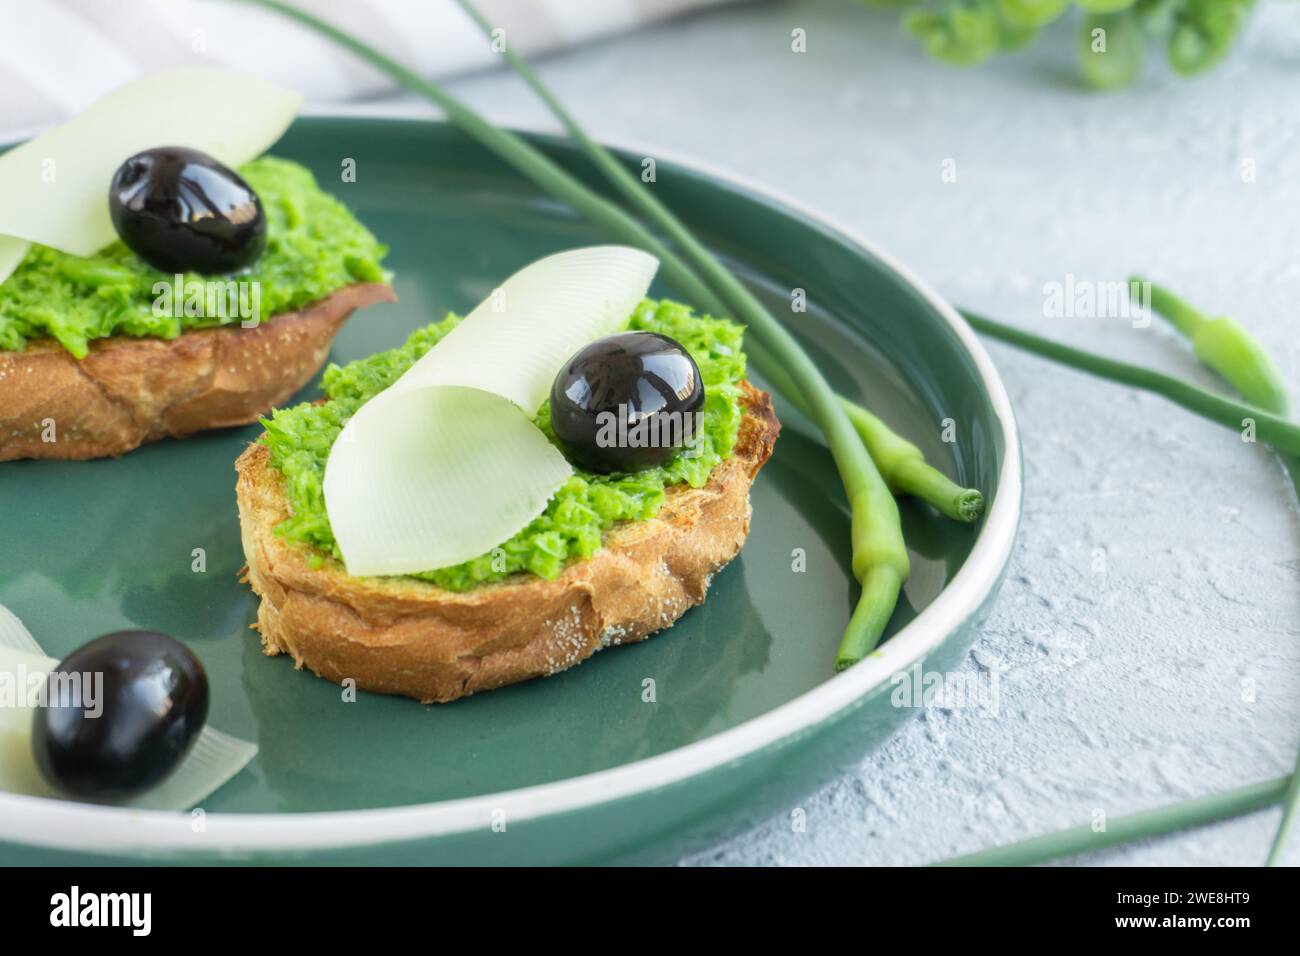 Pain à l'ail. Tranches de baguette avec beurre à l'ail, olives, fromage et flèches à l'ail dans une assiette verte Banque D'Images